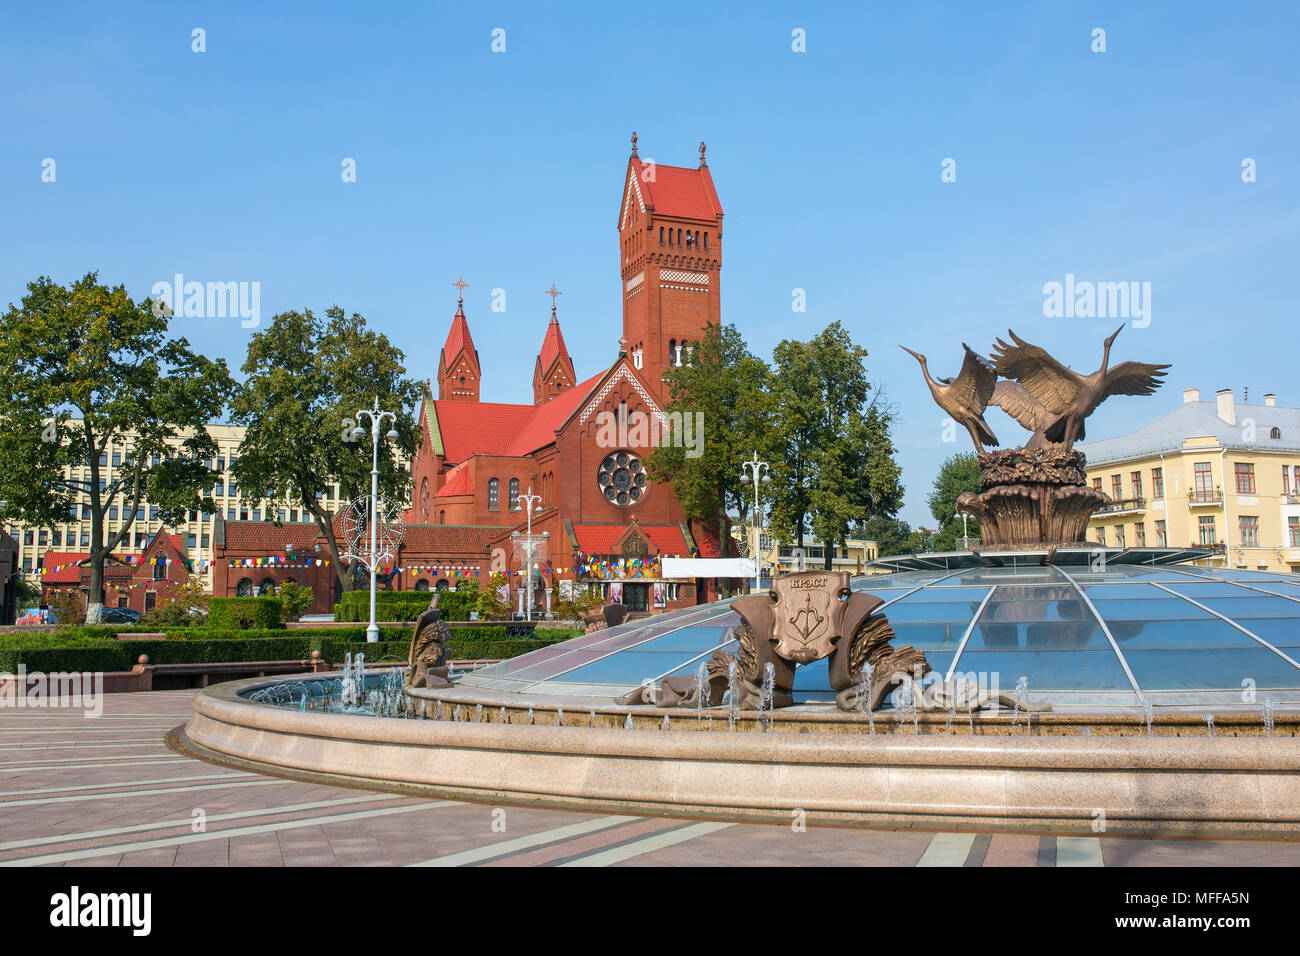 Eglise des Saints Simon, également connu sous le nom de l'église rouge et fontaine avec nom de ville biélorusse Brest sur elle à la place de l'indépendance à Minsk, en Biélorussie. Banque D'Images